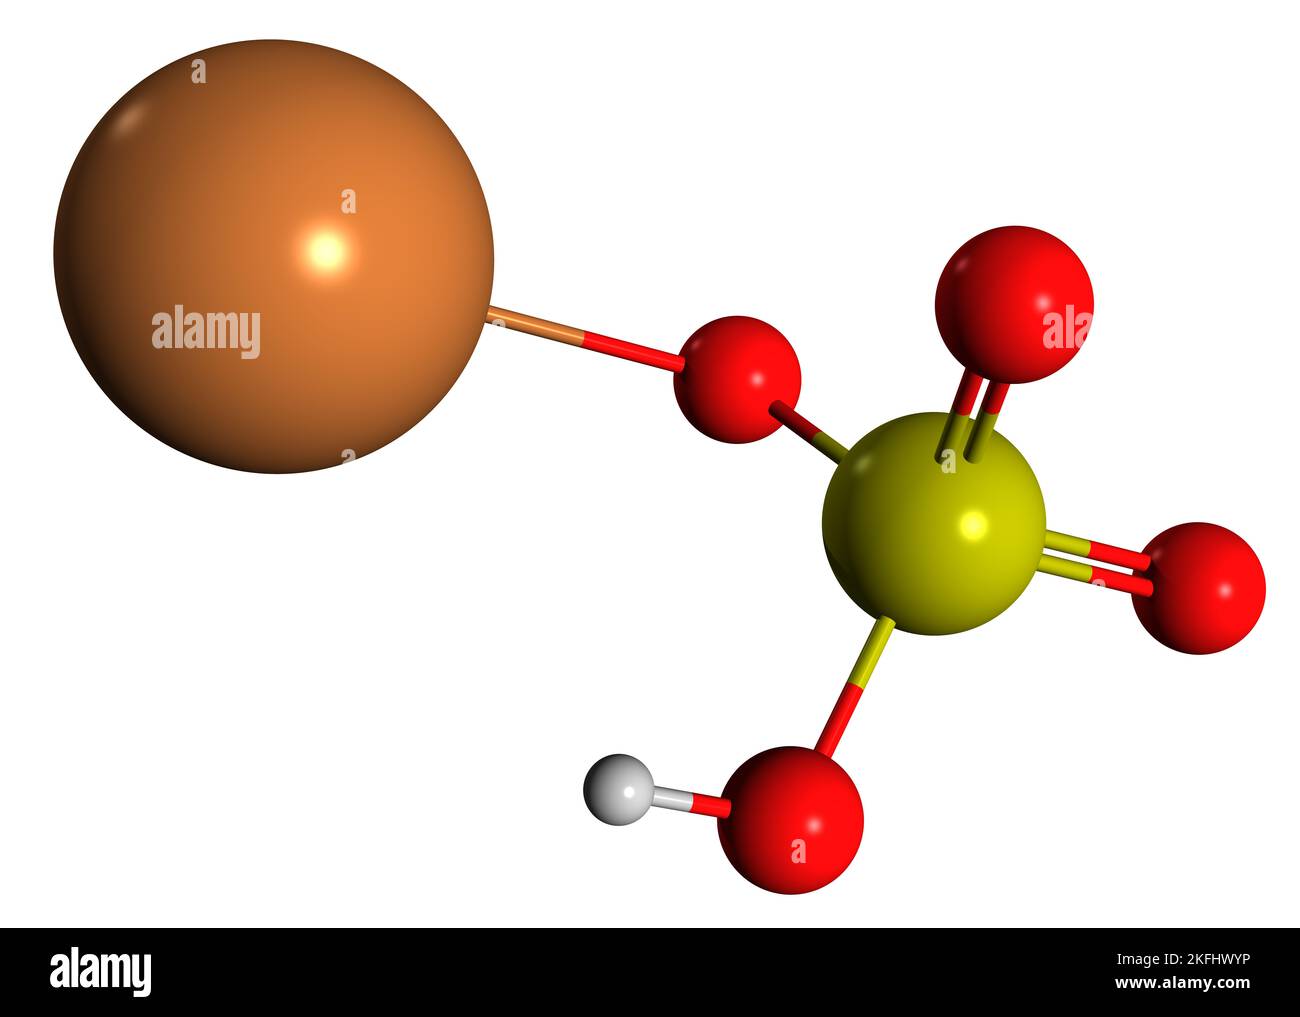 3D Bild der Skelettformel von Kaliumbisulfat - molekulare chemische Struktur von Kaliumhydrogensulfat, isoliert auf weißem Hintergrund Stockfoto